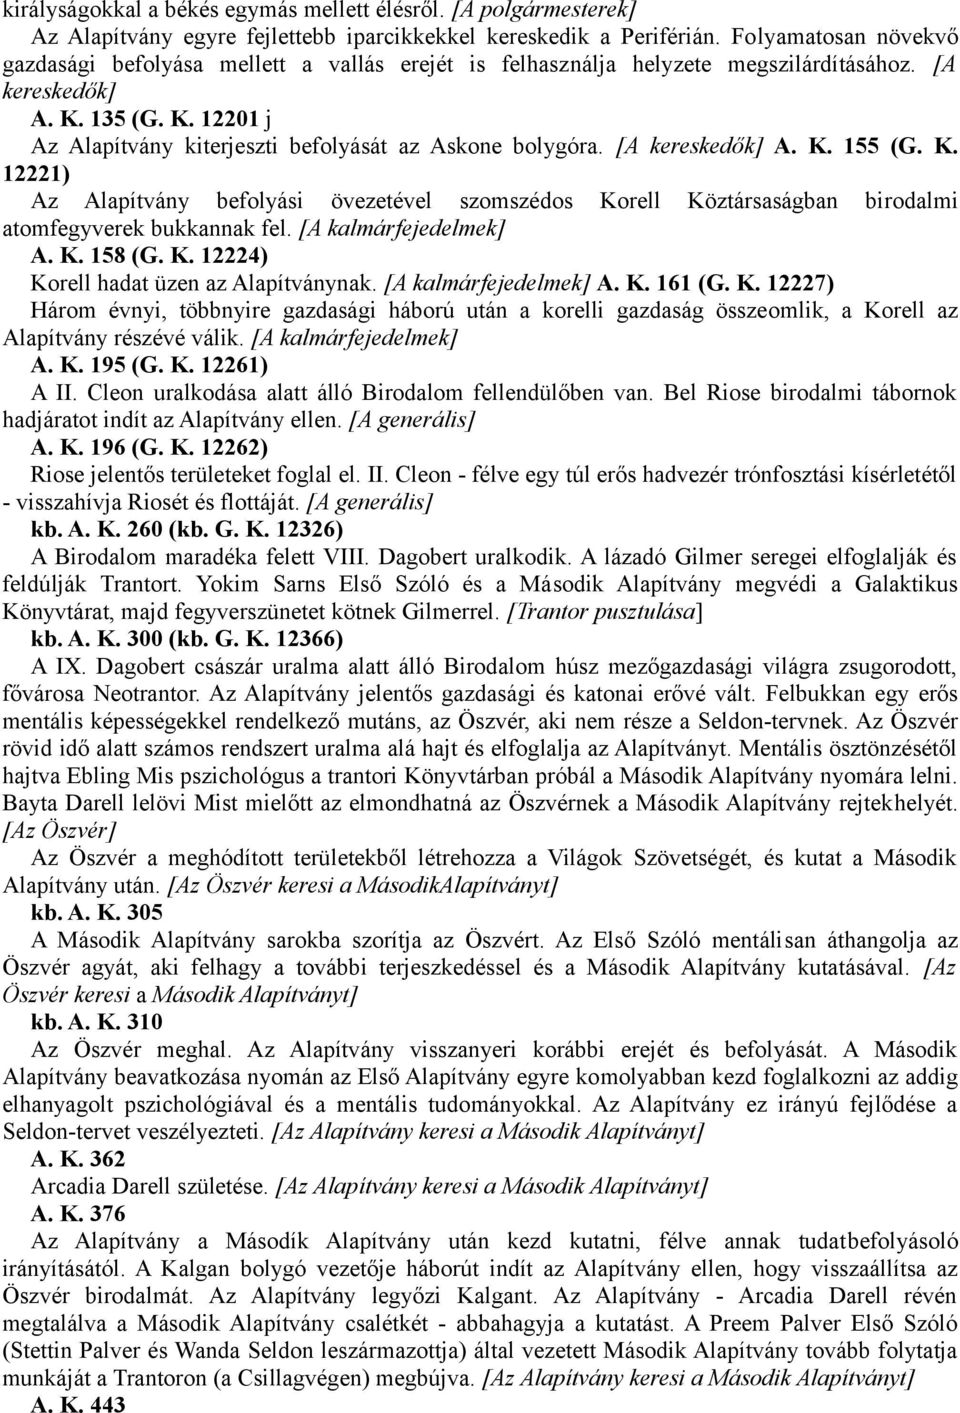 [A kereskedők] A. K. 155 (G. K. 12221) Az Alapítvány befolyási övezetével szomszédos Korell Köztársaságban birodalmi atomfegyverek bukkannak fel. [A kalmárfejedelmek] A. K. 158 (G. K. 12224) Korell hadat üzen az Alapítványnak.